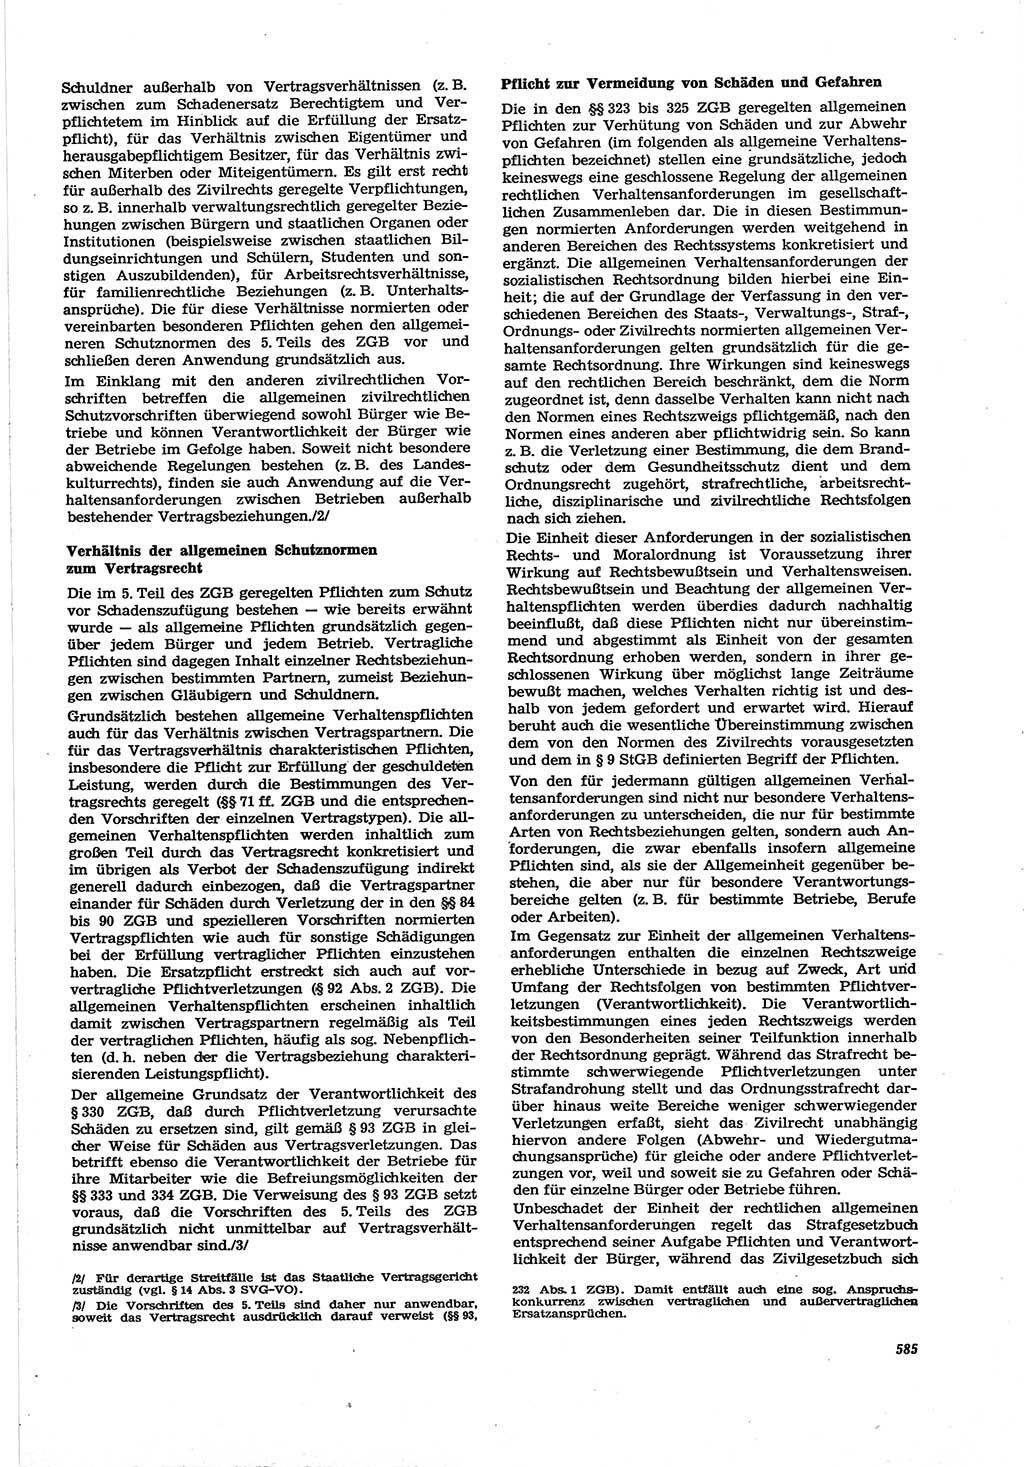 Neue Justiz (NJ), Zeitschrift für Recht und Rechtswissenschaft [Deutsche Demokratische Republik (DDR)], 30. Jahrgang 1976, Seite 585 (NJ DDR 1976, S. 585)